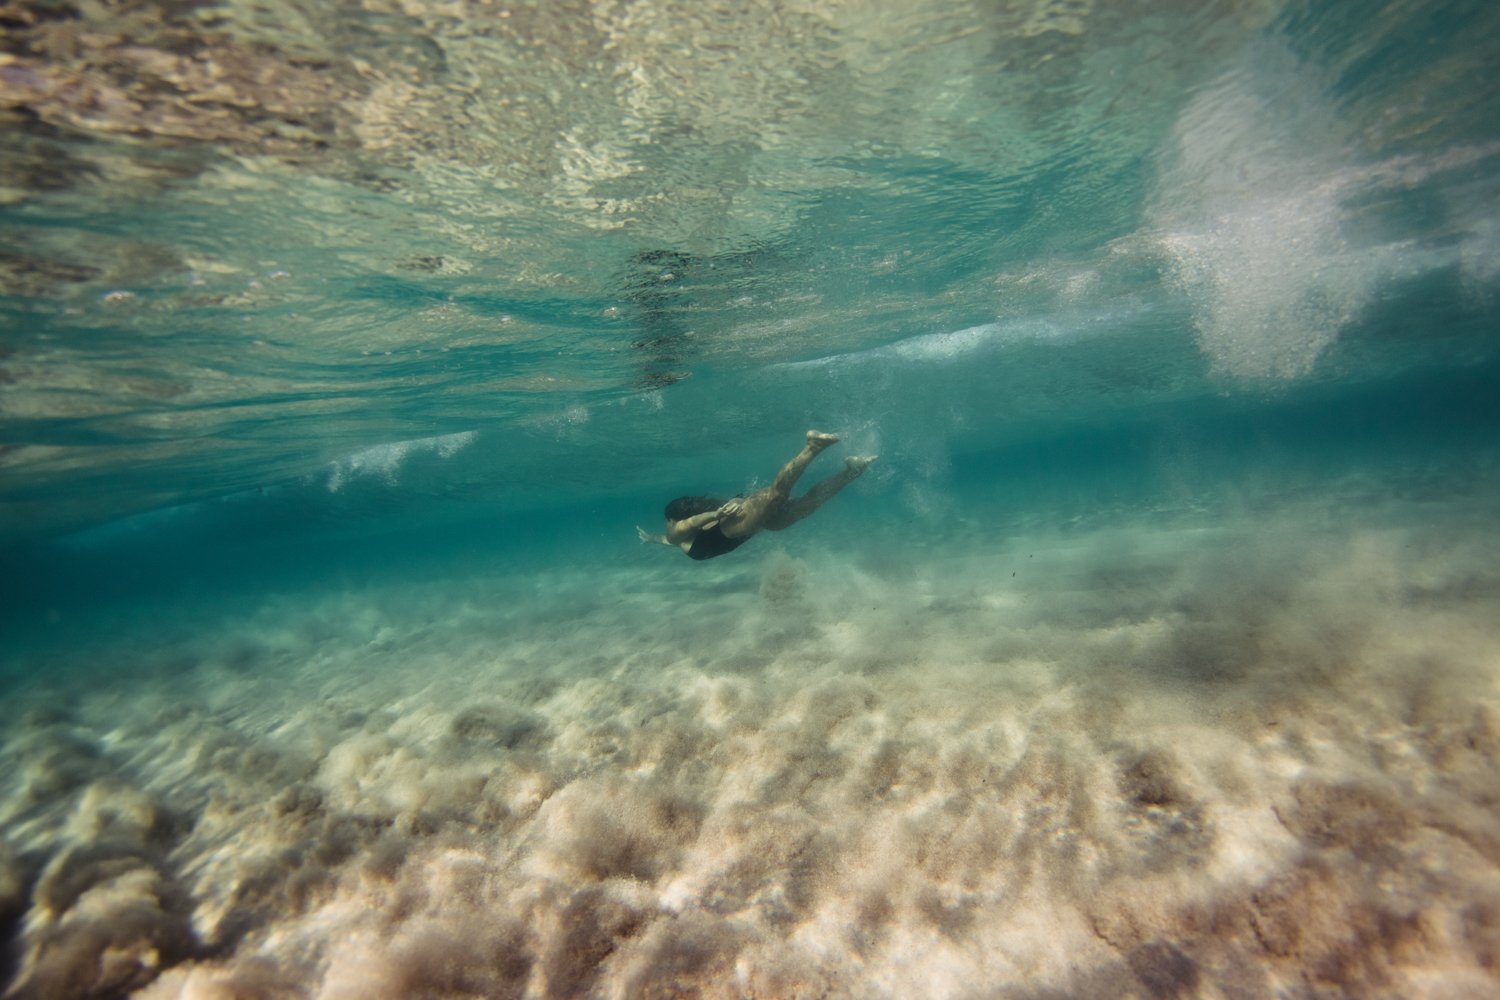 summer underwater corse corsica sea mediterranean island france french photographer photographe ajaccio Krista Espino Capo di feno wave femme woman fine art photography swim-37.jpg